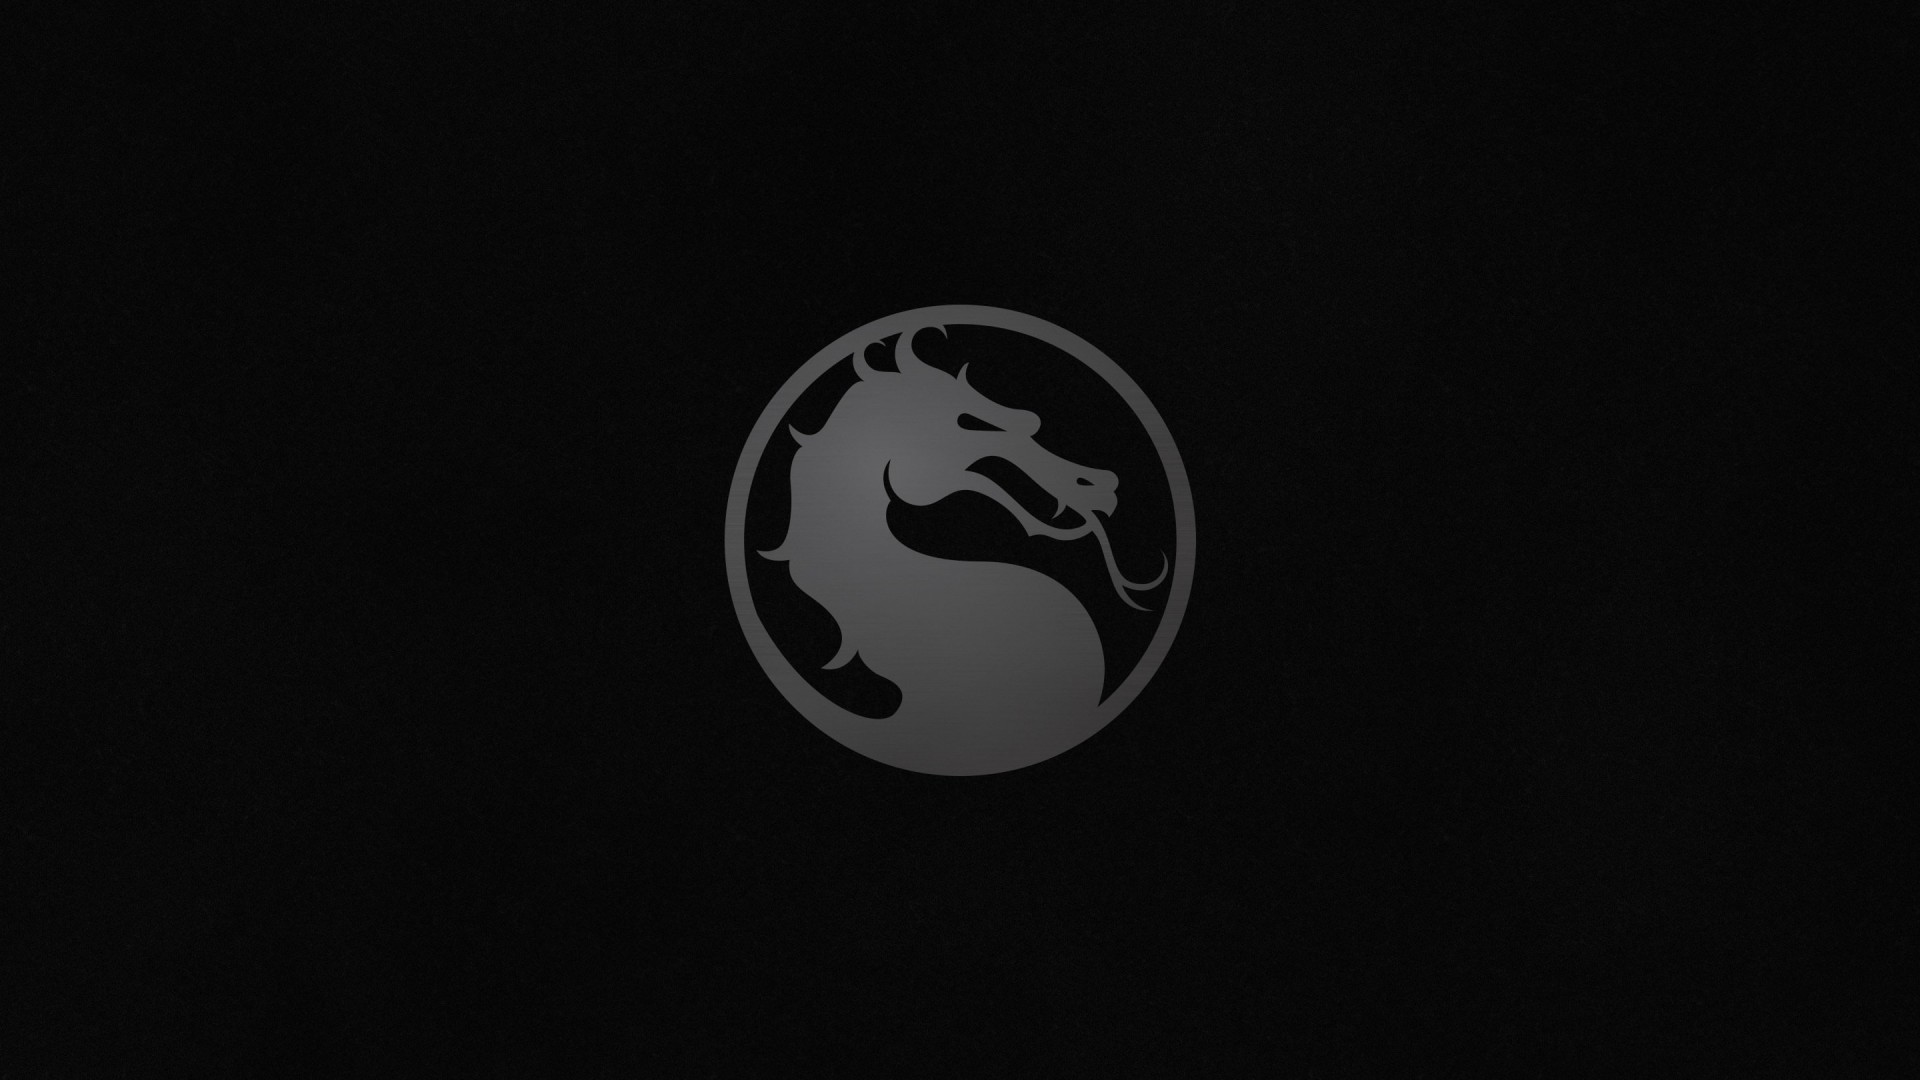 Mortal Kombat X Logo Wallpaper for Desktop 1920x1080